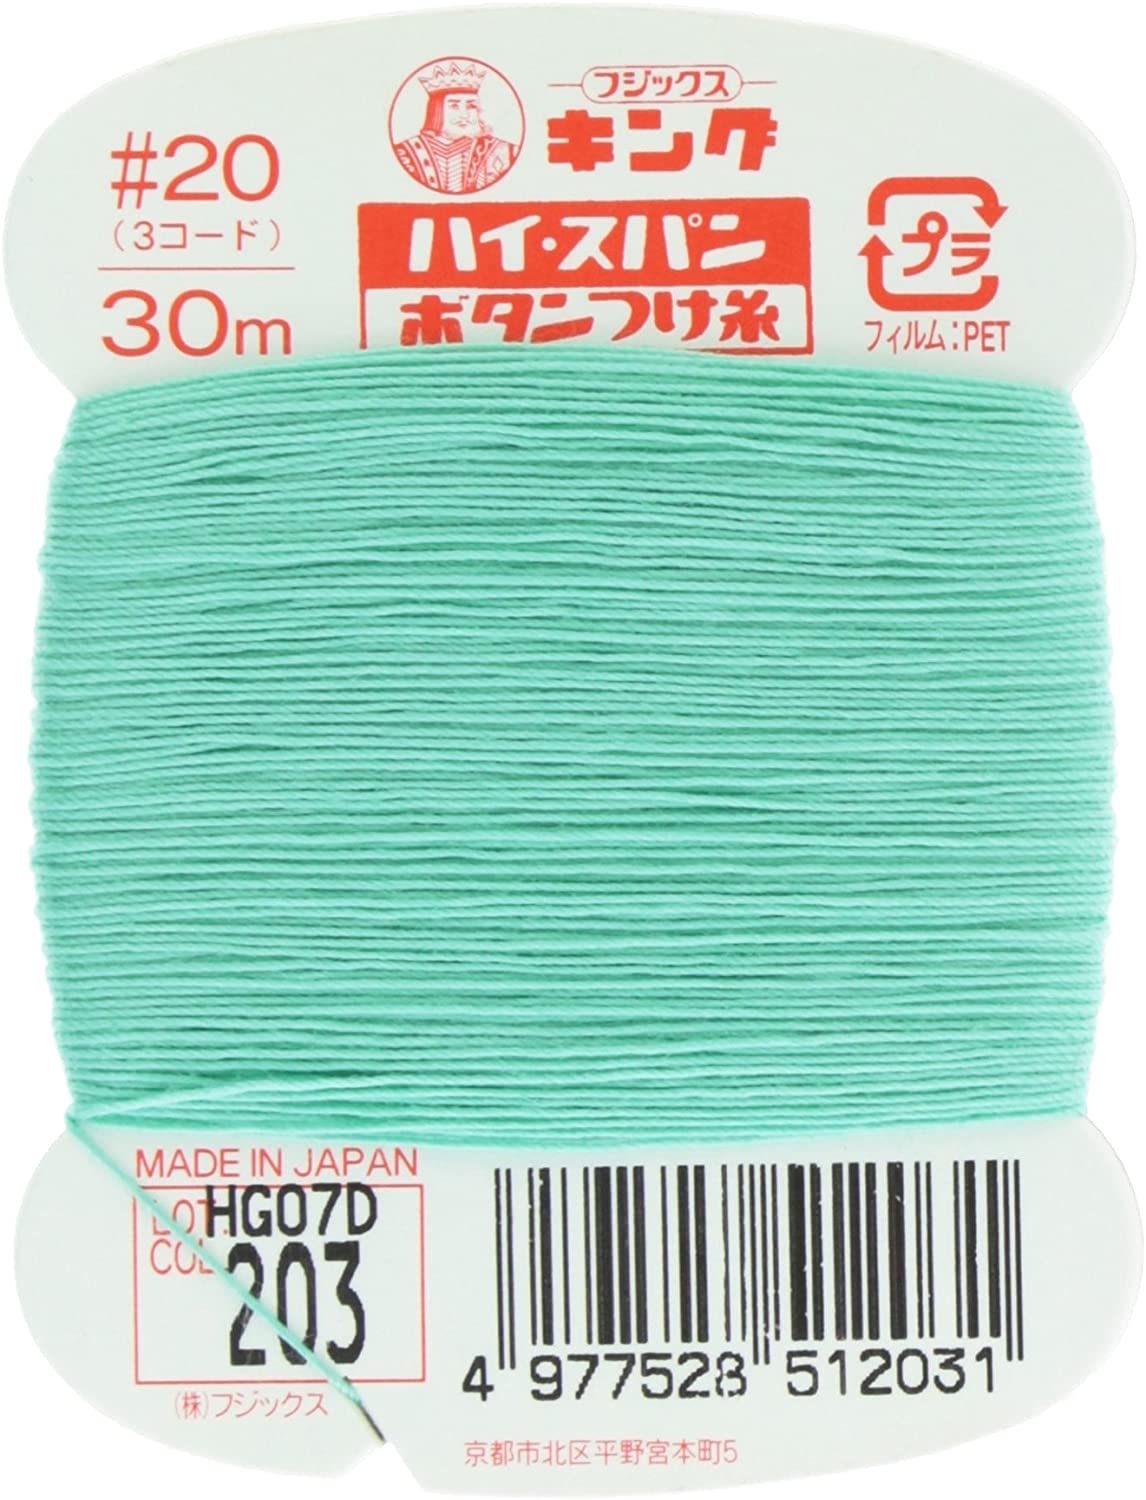 FK51-203 ハイスパンボタンつけ糸 #20 30m巻 (枚)